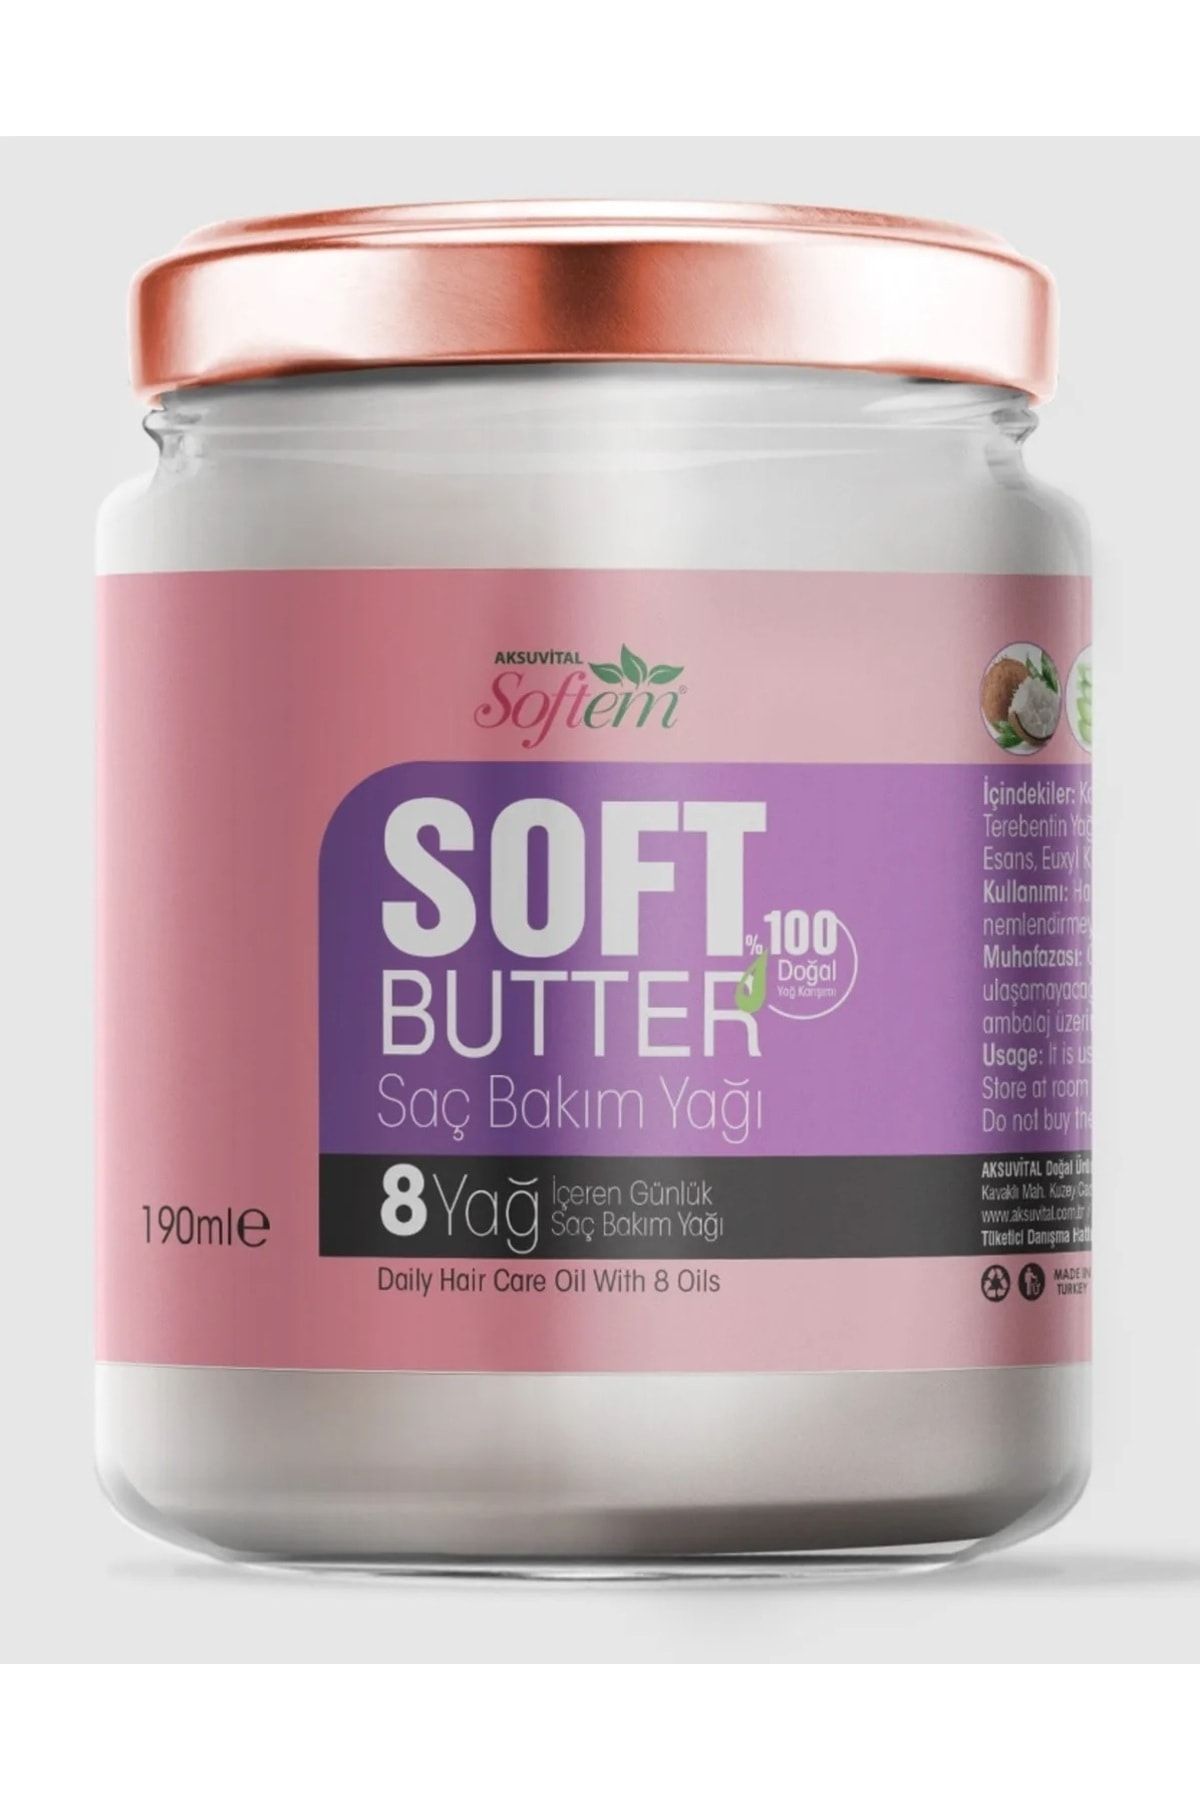 Softem SOFT BUTTER 8 Yağ İçeren 190 ml Saç Bakım Yağı